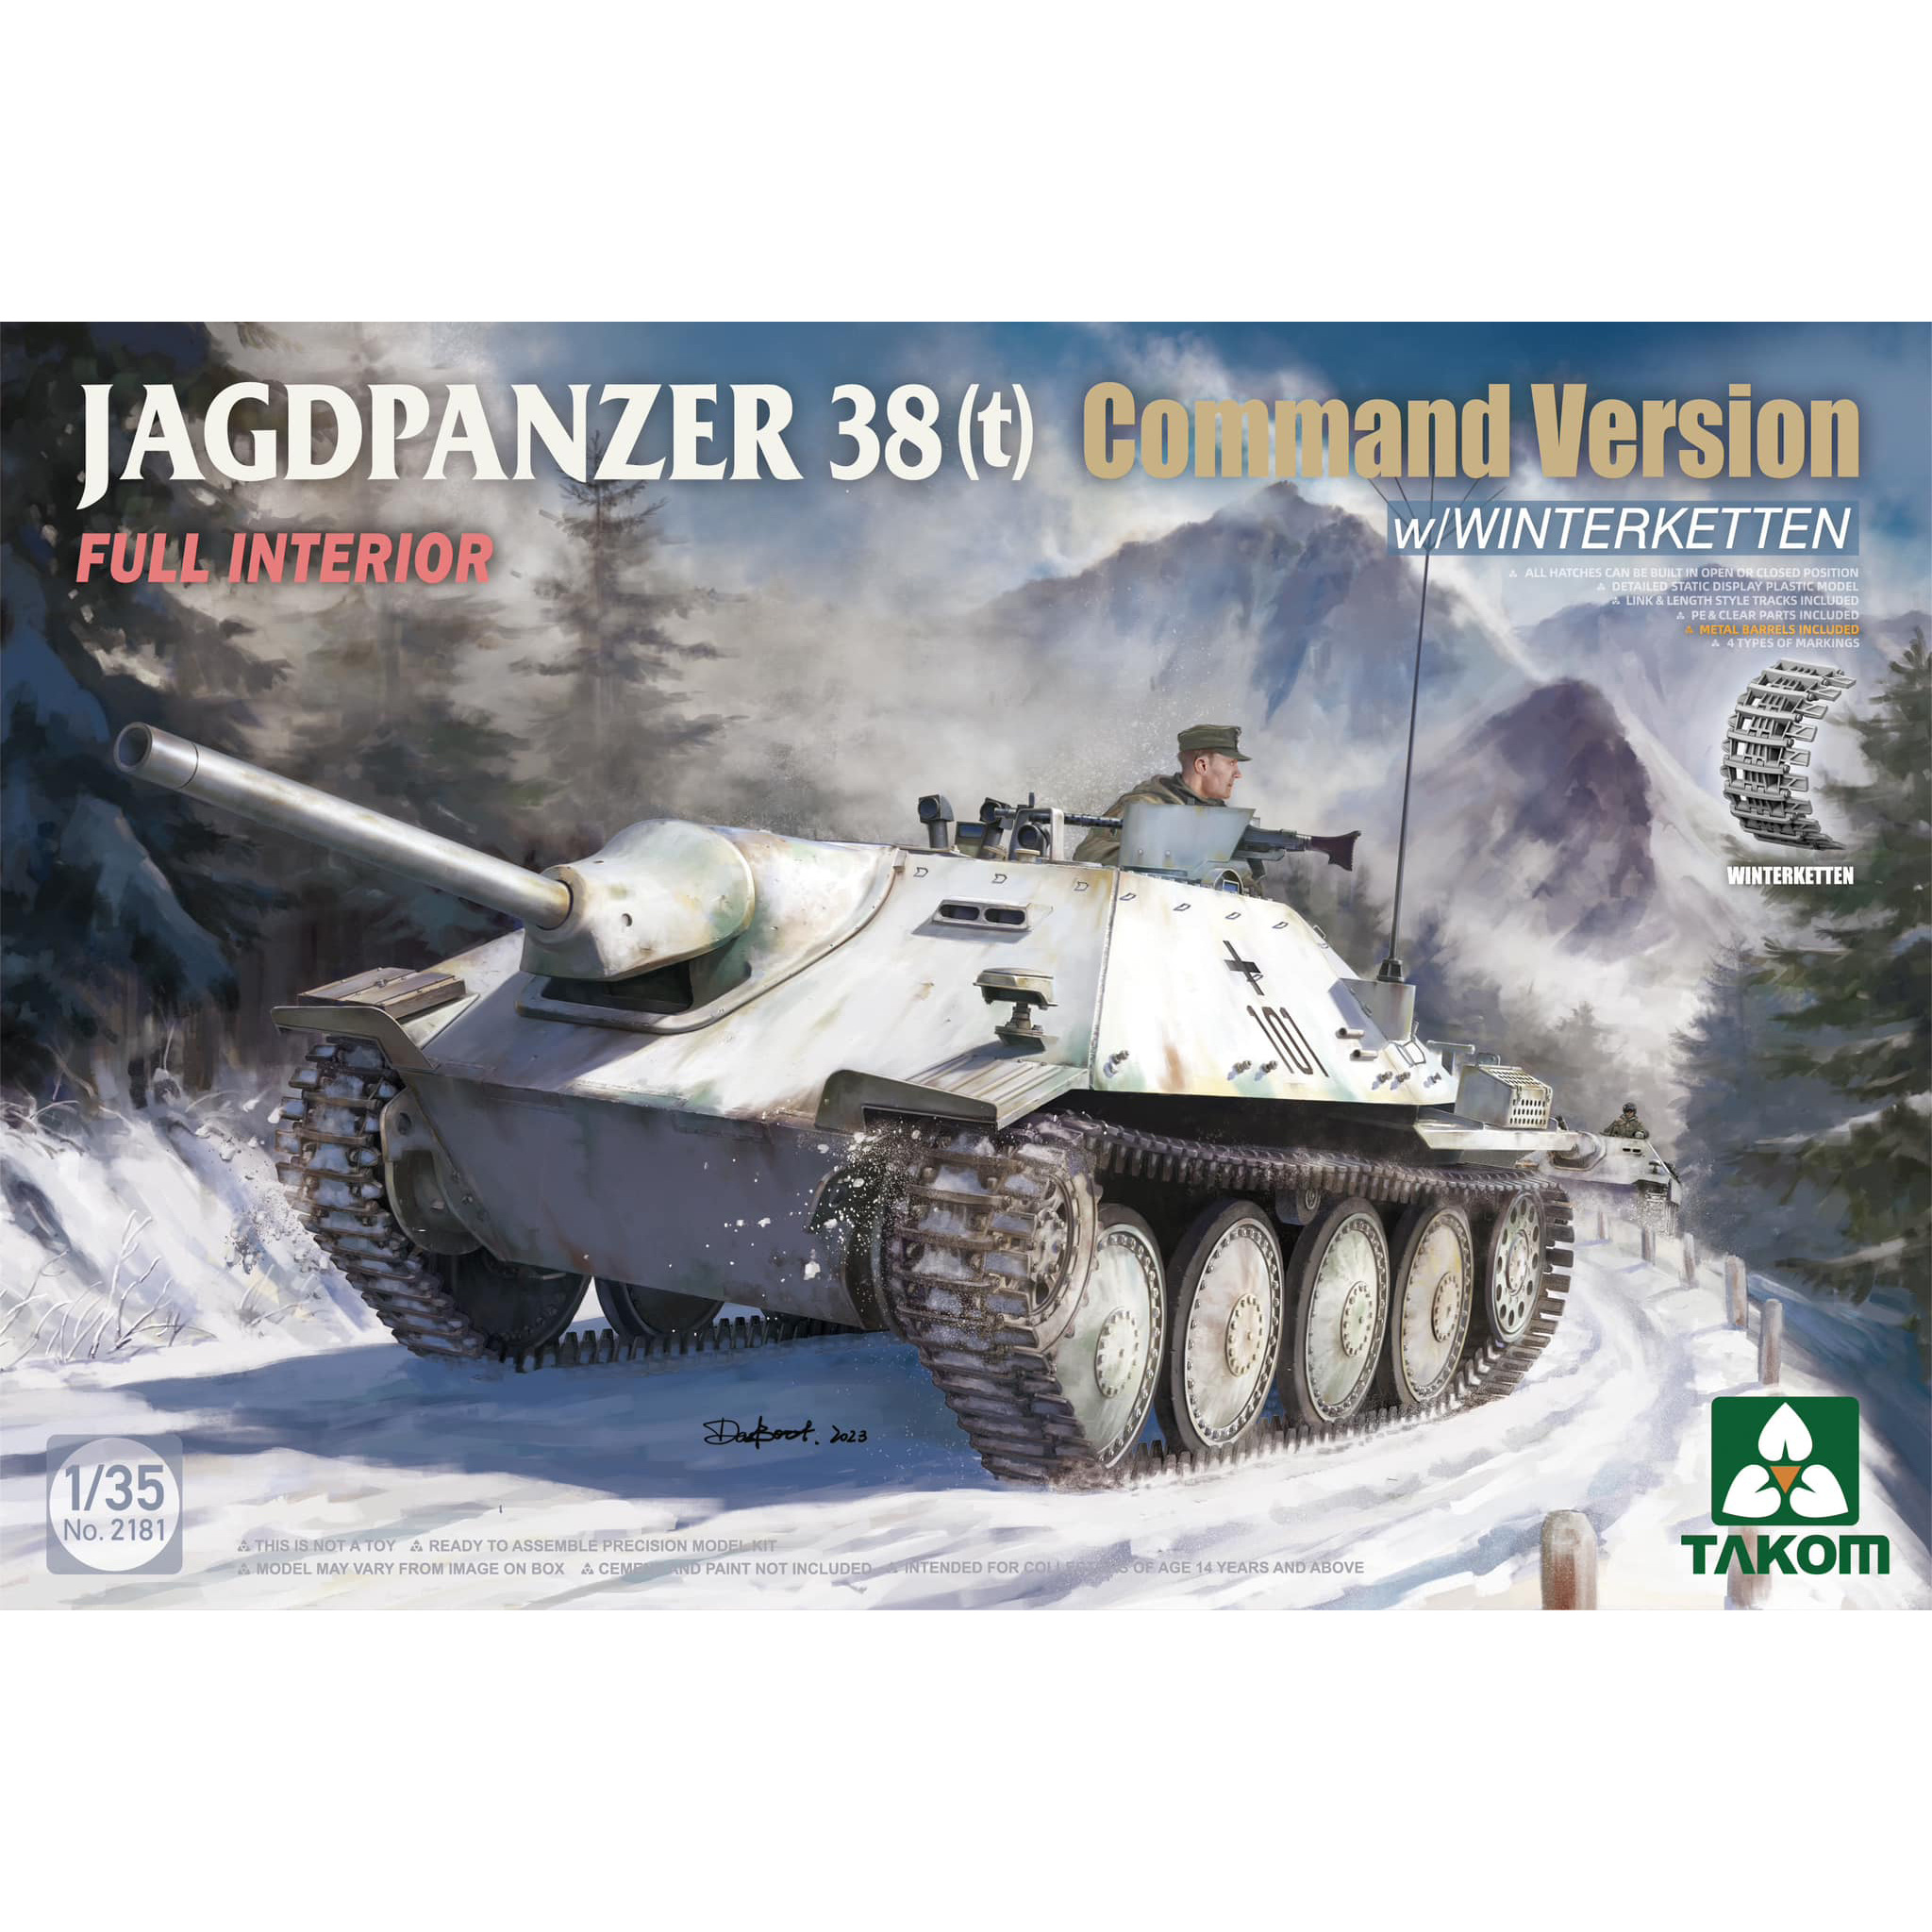 2181 Takom 1/35 Командирская версия Jagdpanzer 38(t) с полным интерьером